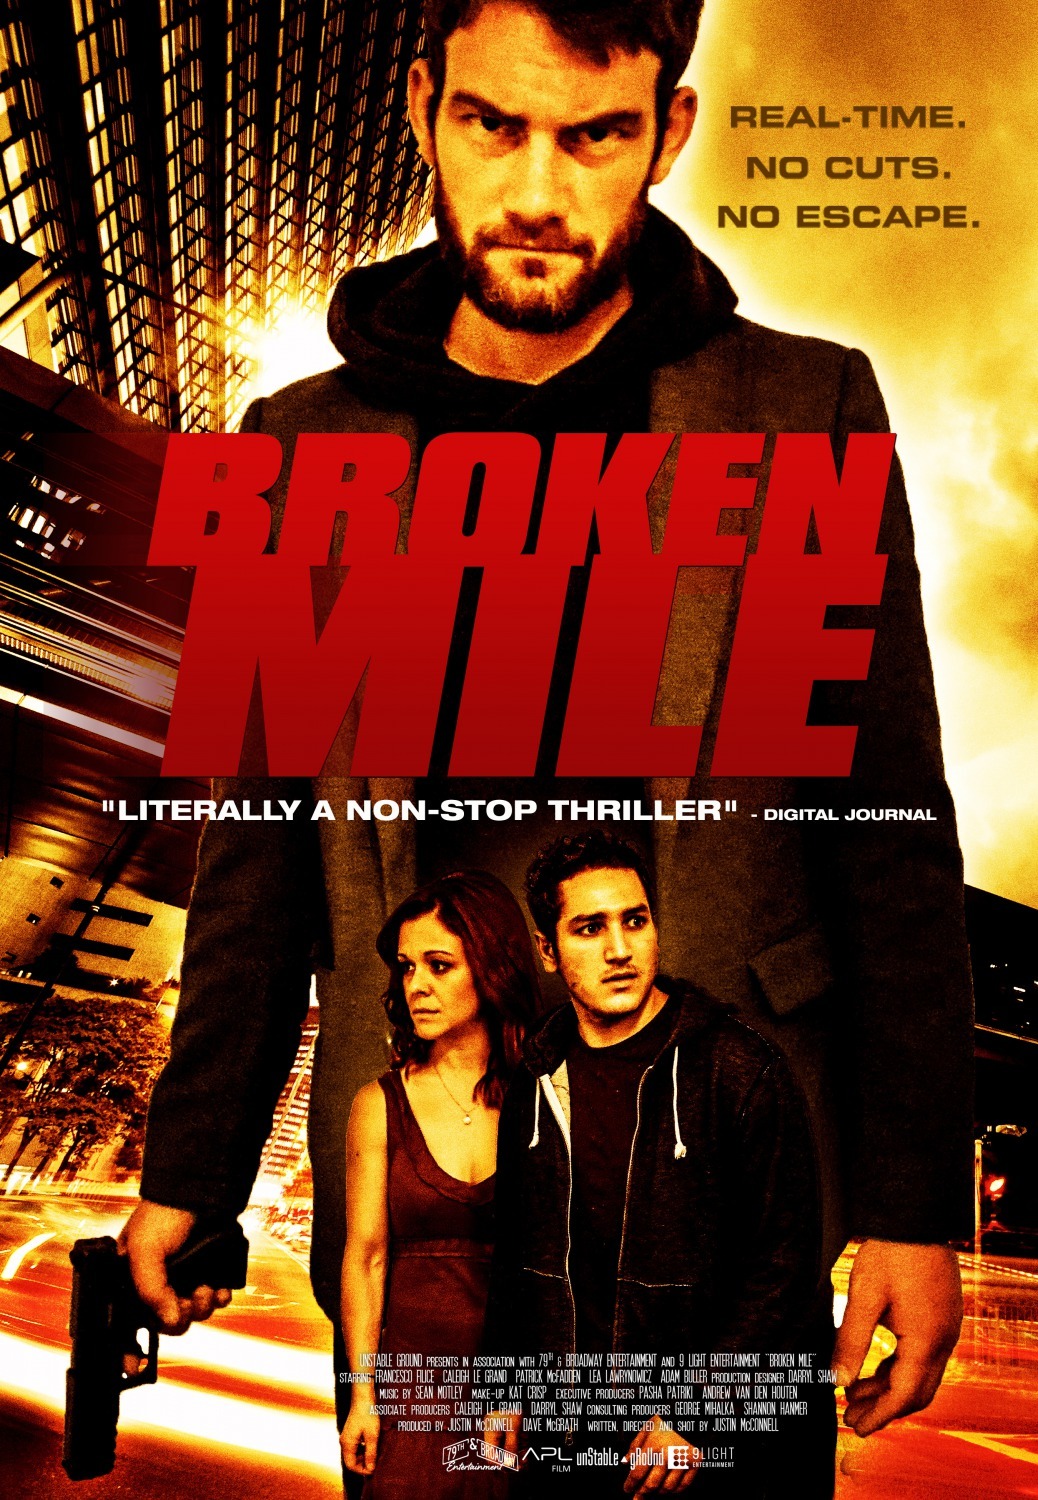 Nonton film Broken Mile layarkaca21 indoxx1 ganool online streaming terbaru